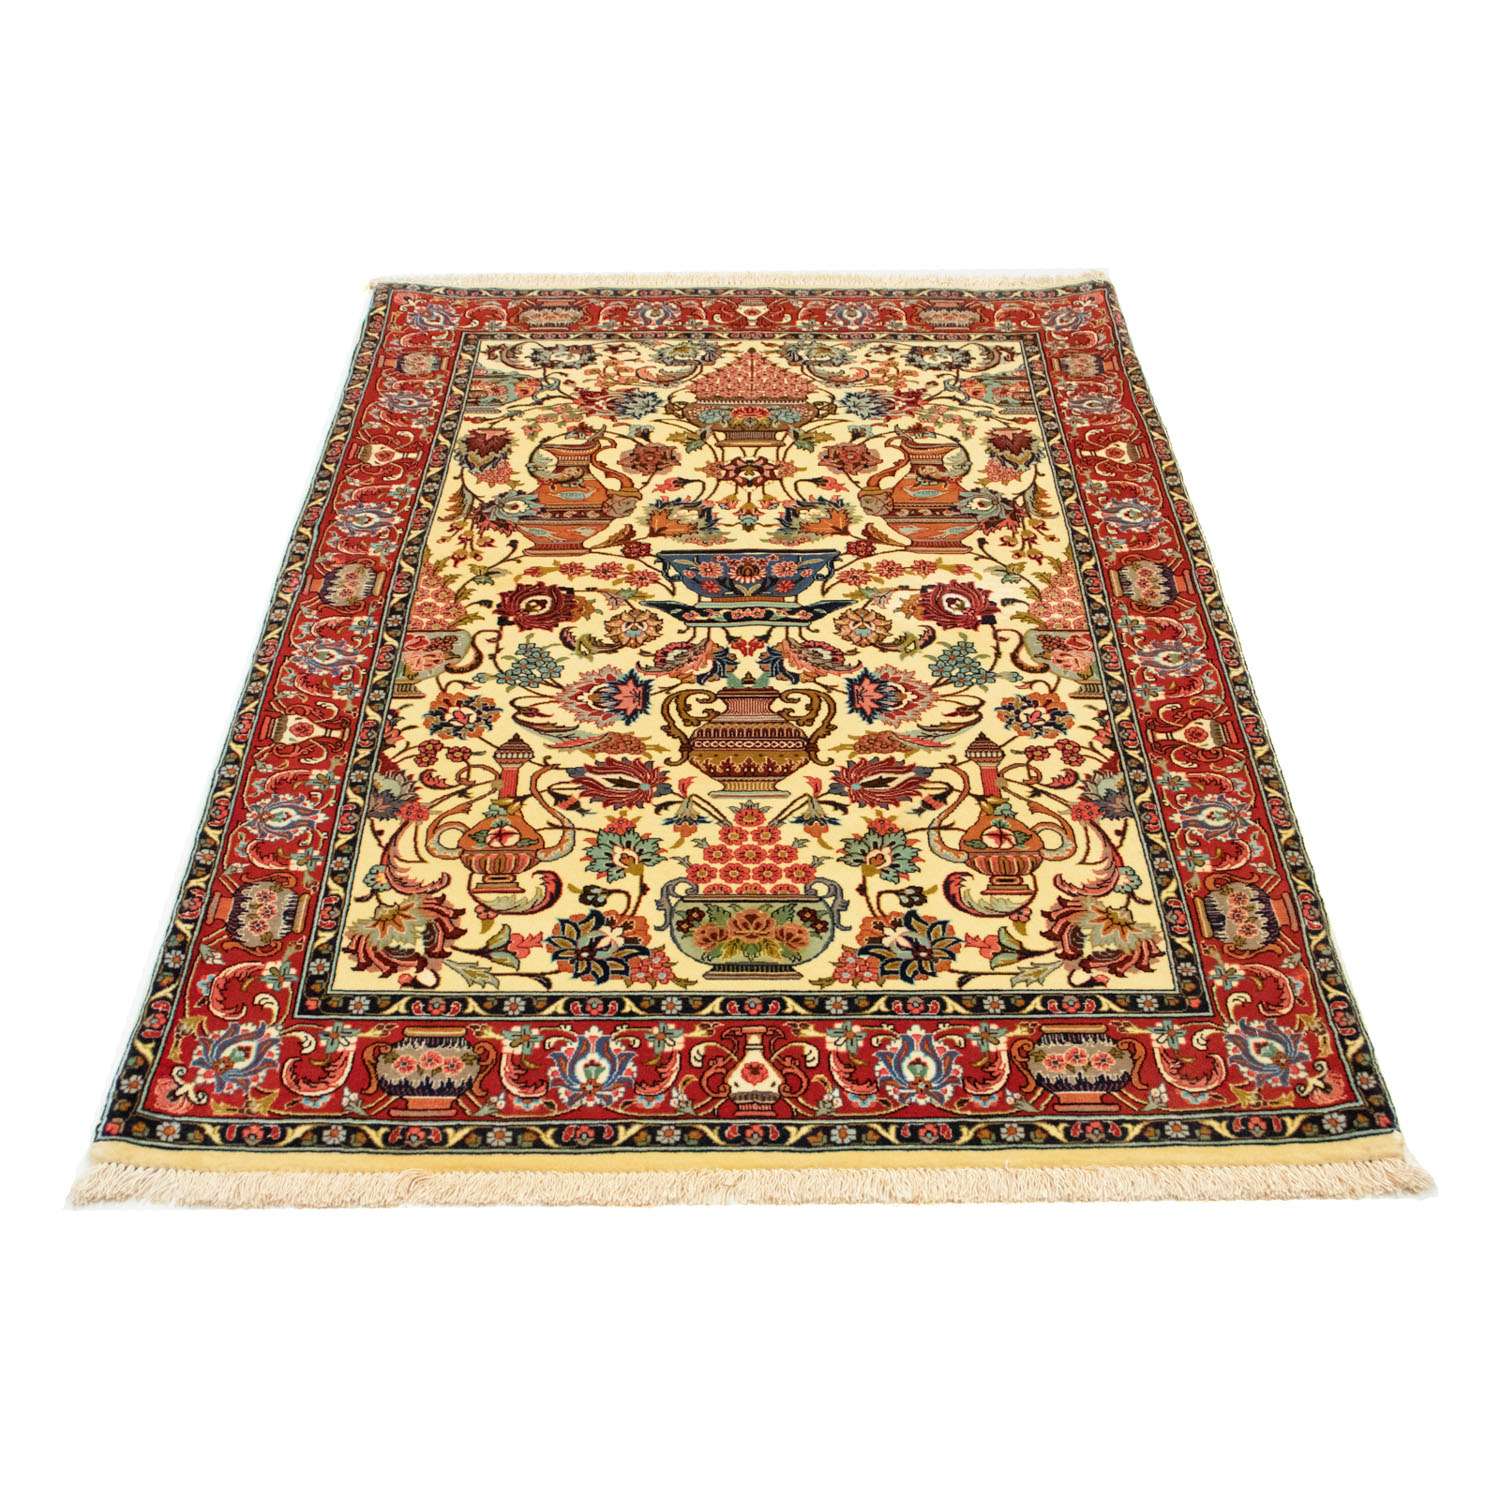 Perský koberec - Ghom - 170 x 104 cm - béžová